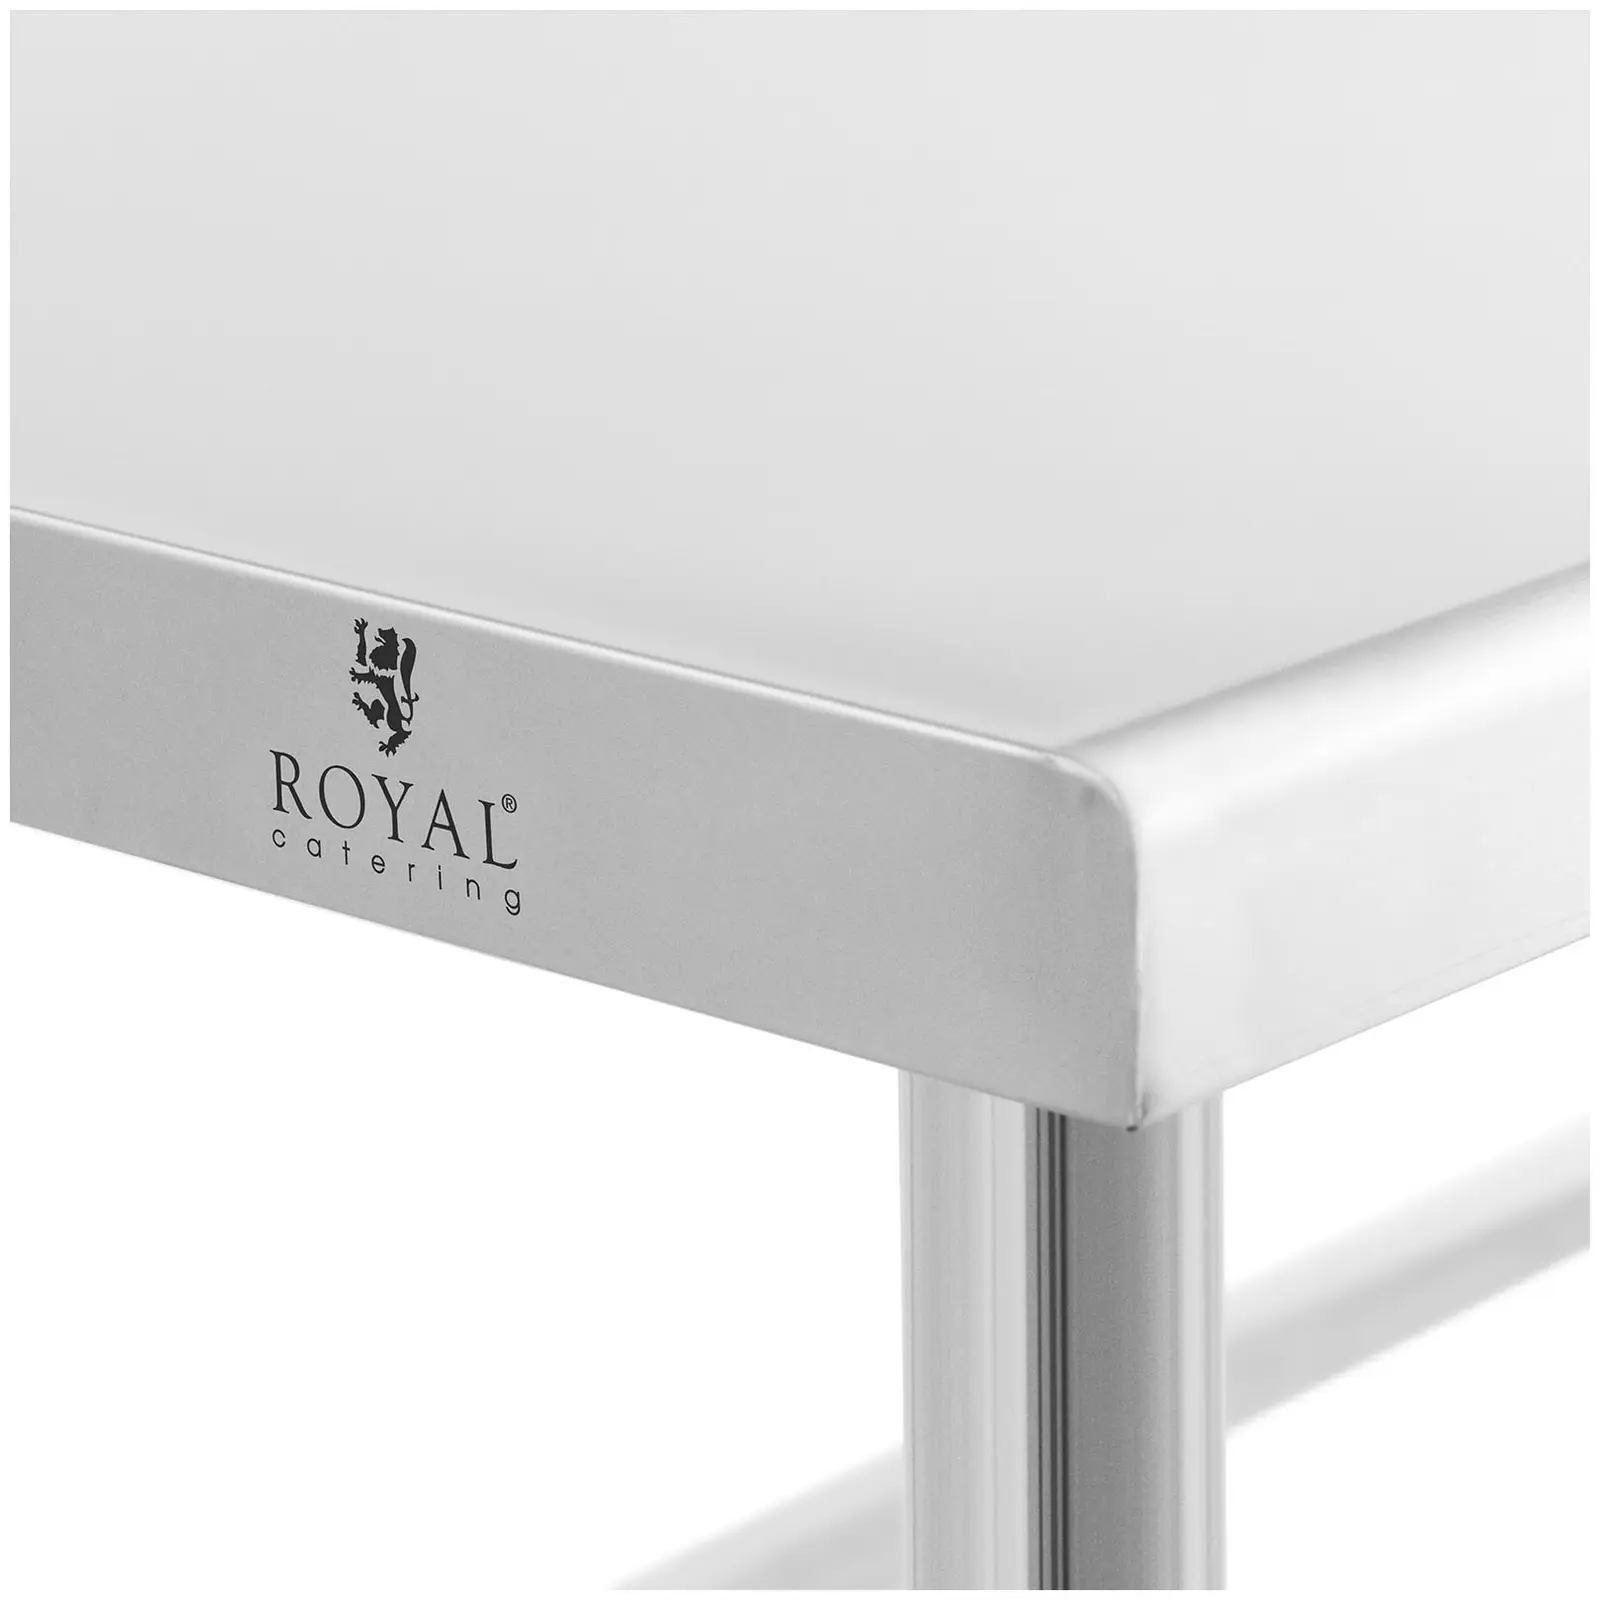 Table de travail inox - 120 x 70 cm - Capacité de 93 kg - Royal Catering